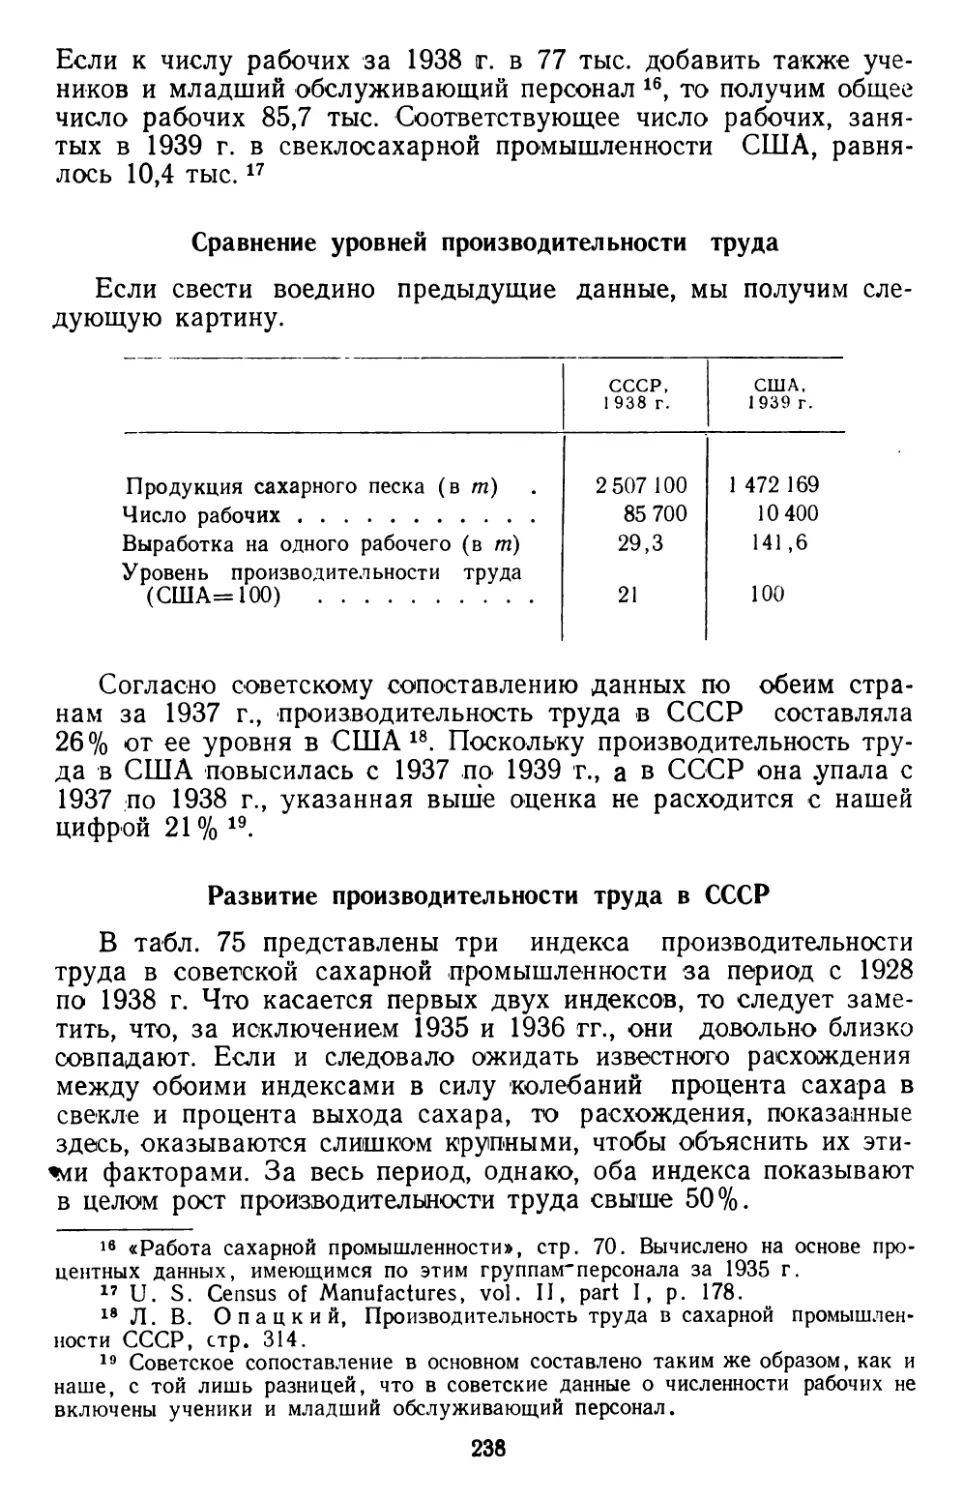 Сравнение уровней производительности труда
Развитие производительности труда в СССР